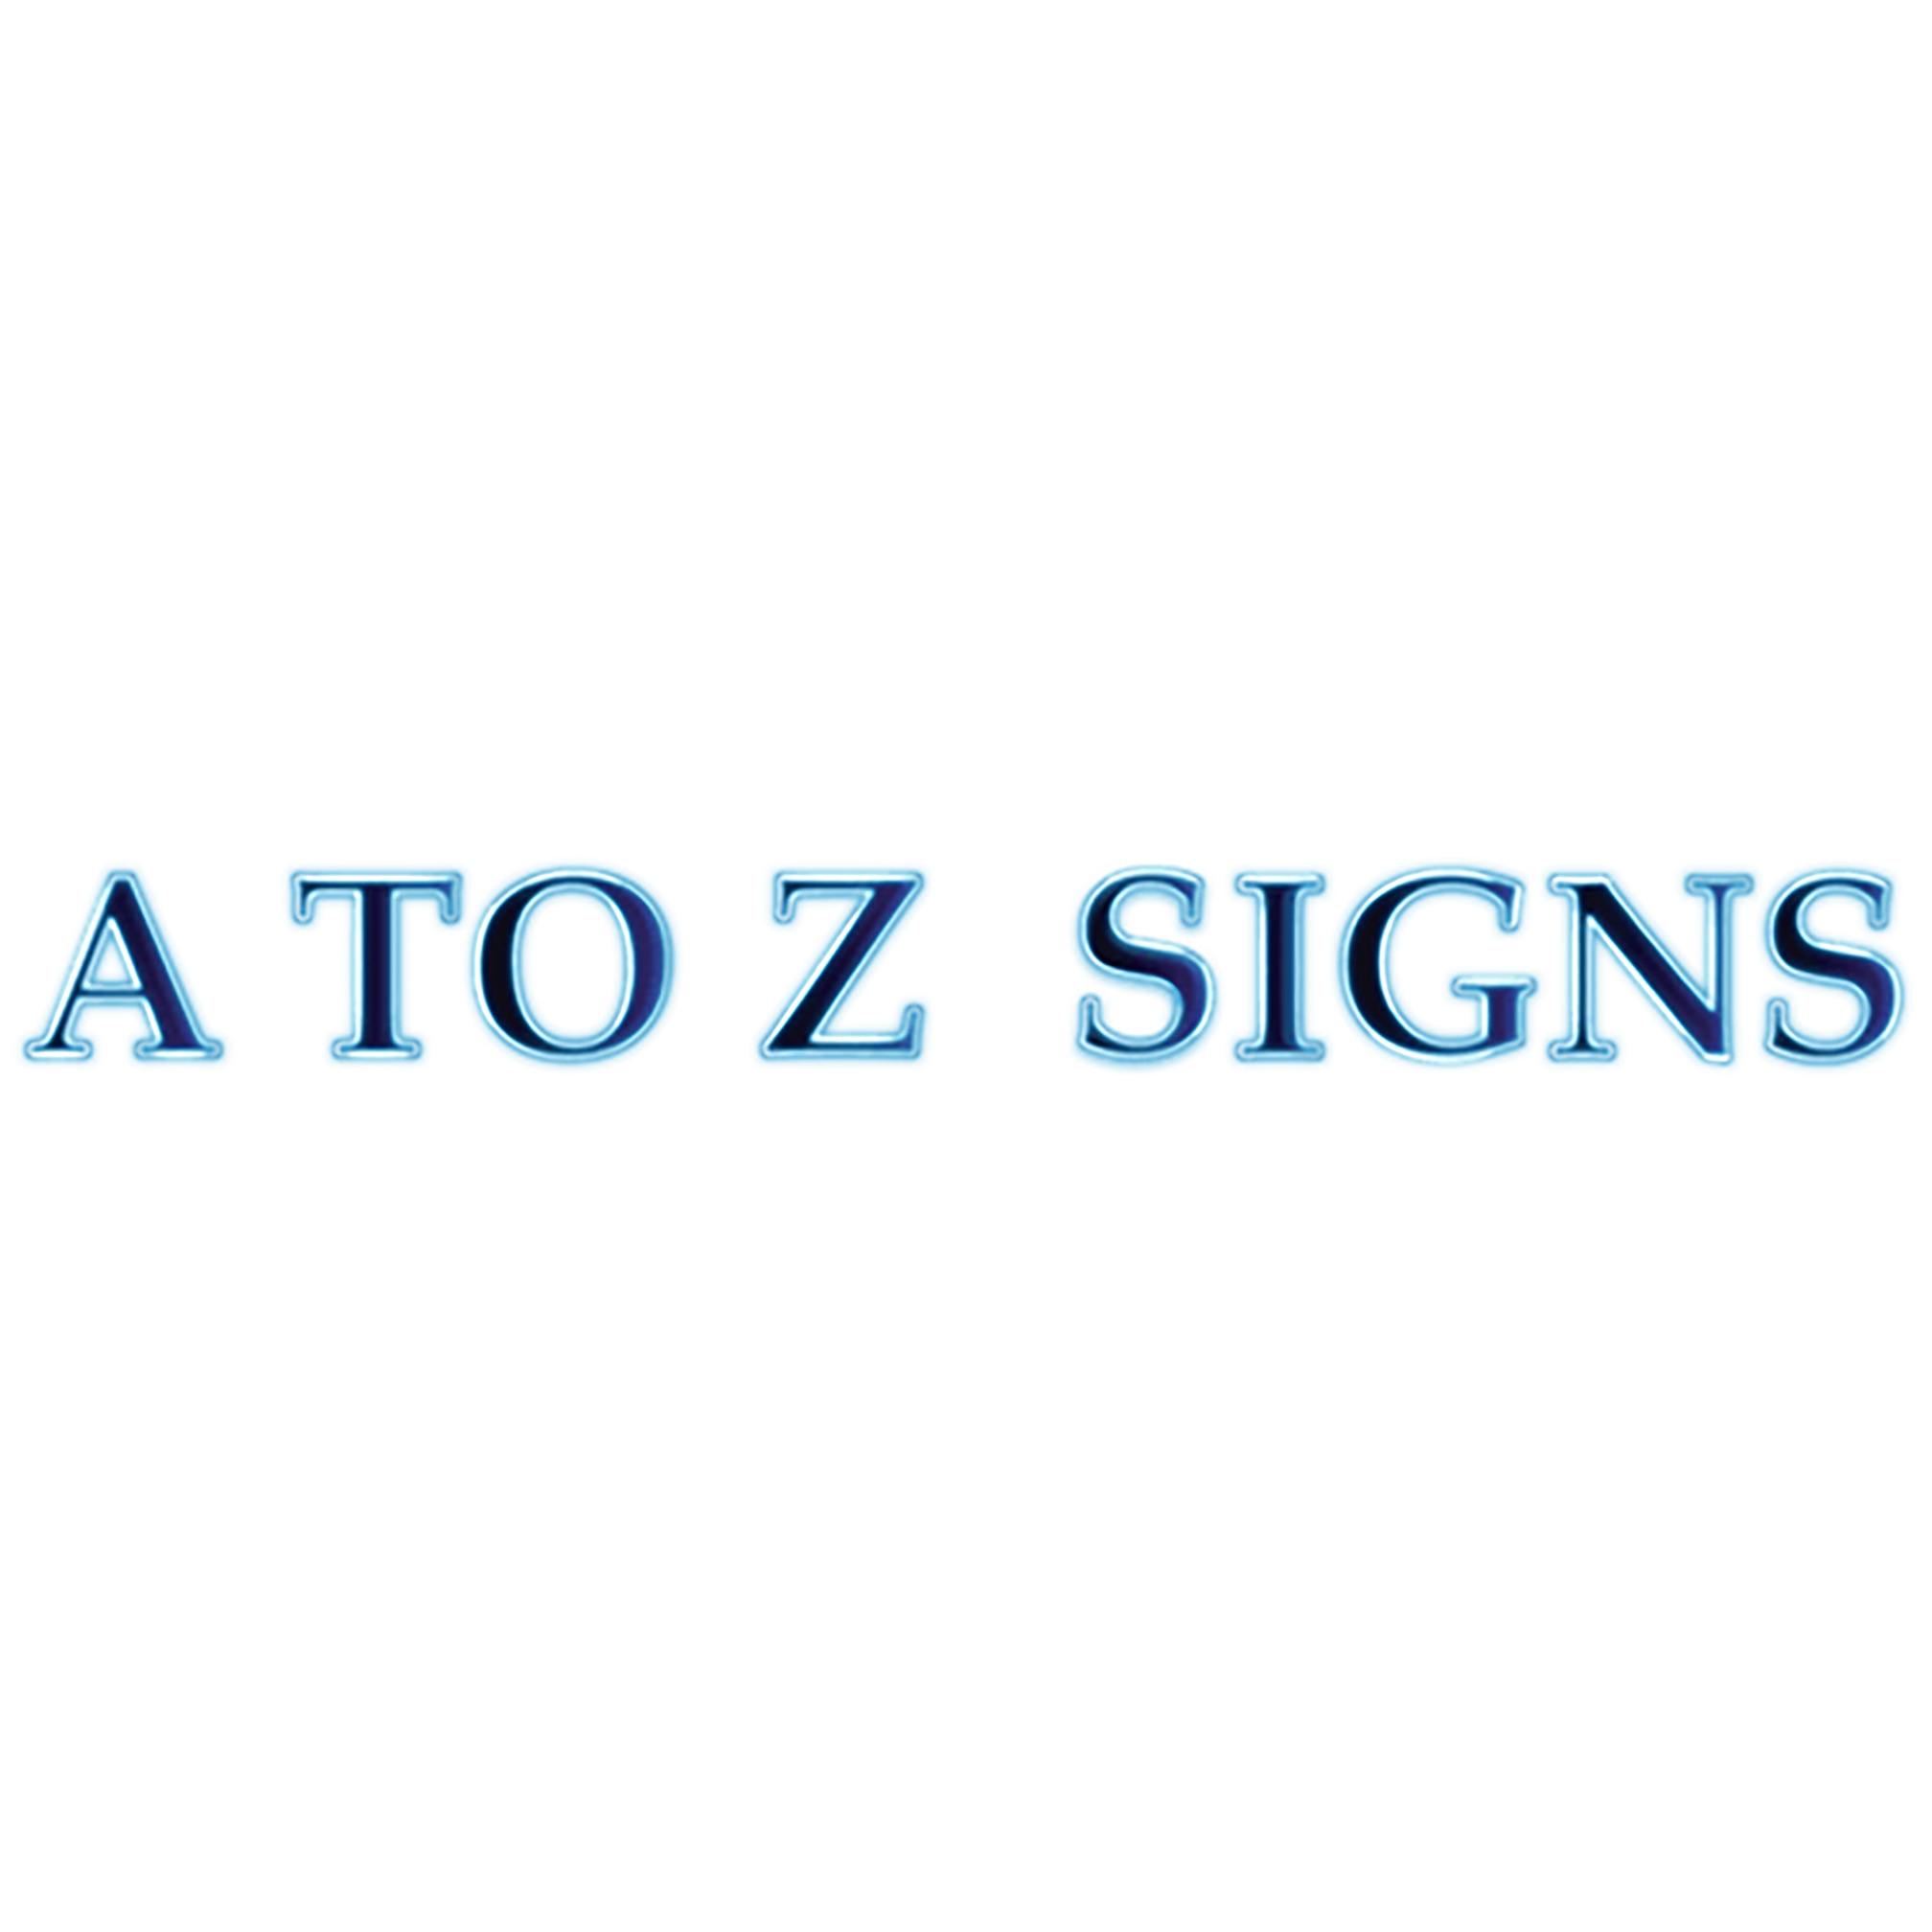 AToZ Signs - Gresham - Gresham, OR 97030 - (503)663-7183 | ShowMeLocal.com